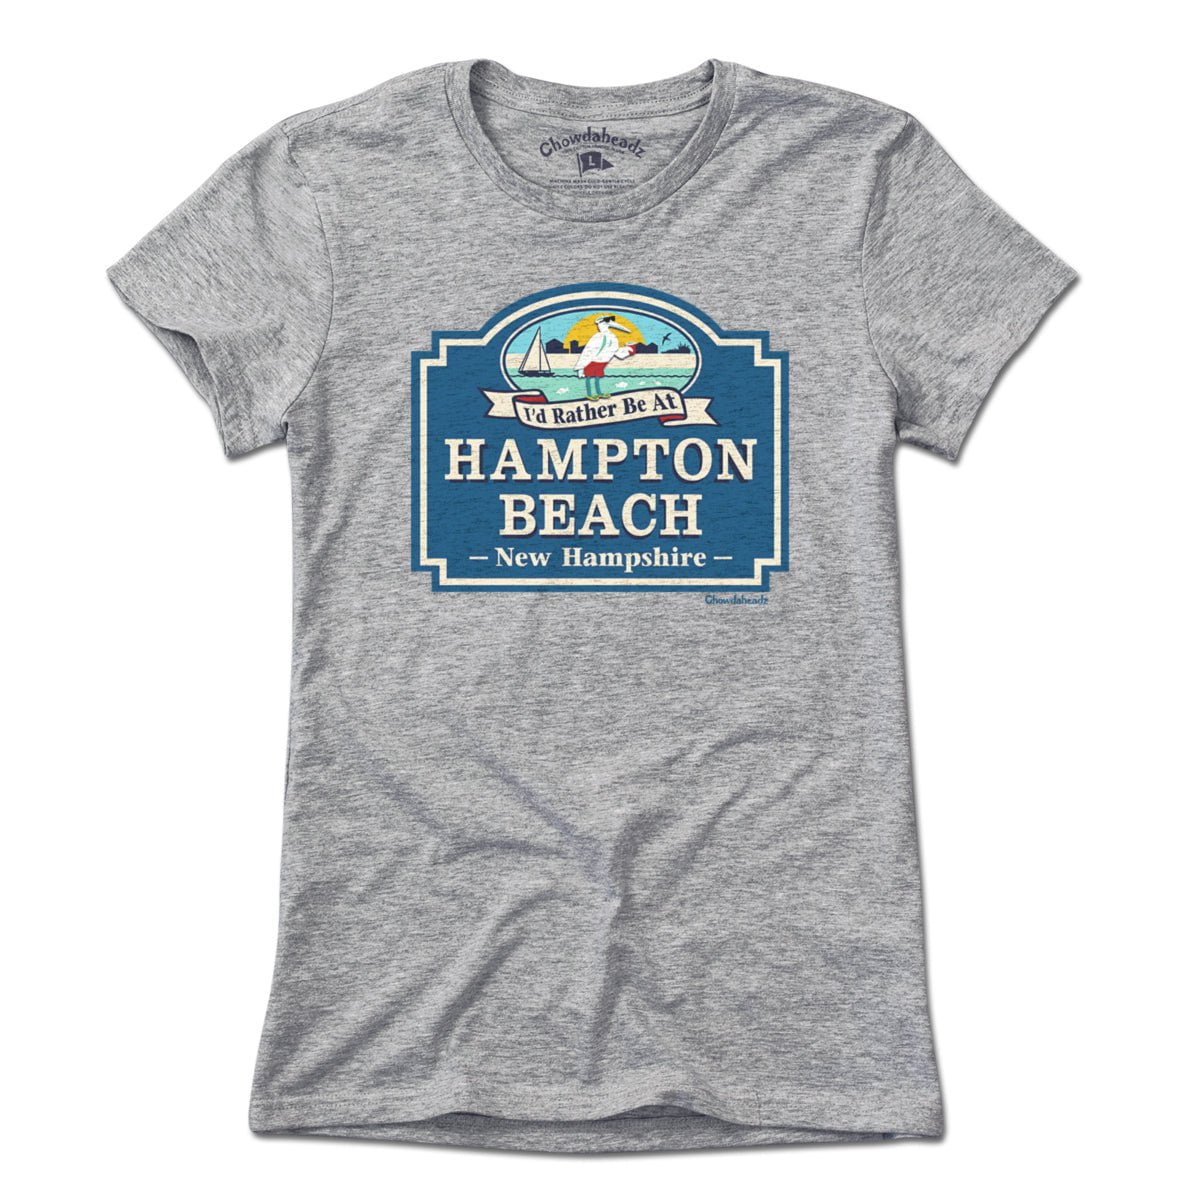 I'd Rather Be At Hampton Beach T-Shirt - Chowdaheadz